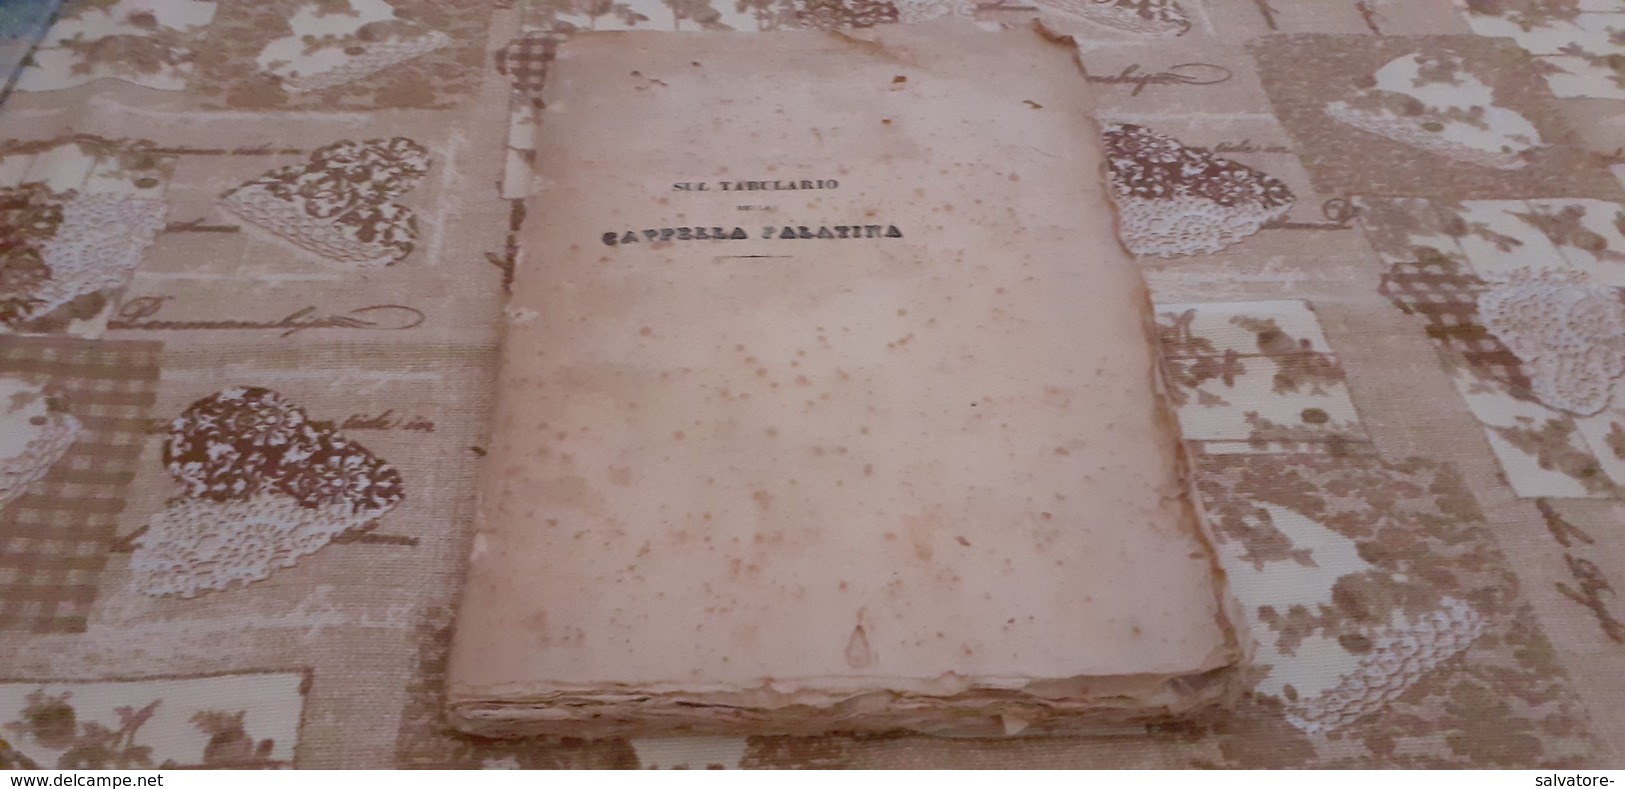 SUL TABULARIO DELLA CAPPELLA PALATINA LETTERA VINCENZO MORTILLARO - 1836 - Libri Antichi